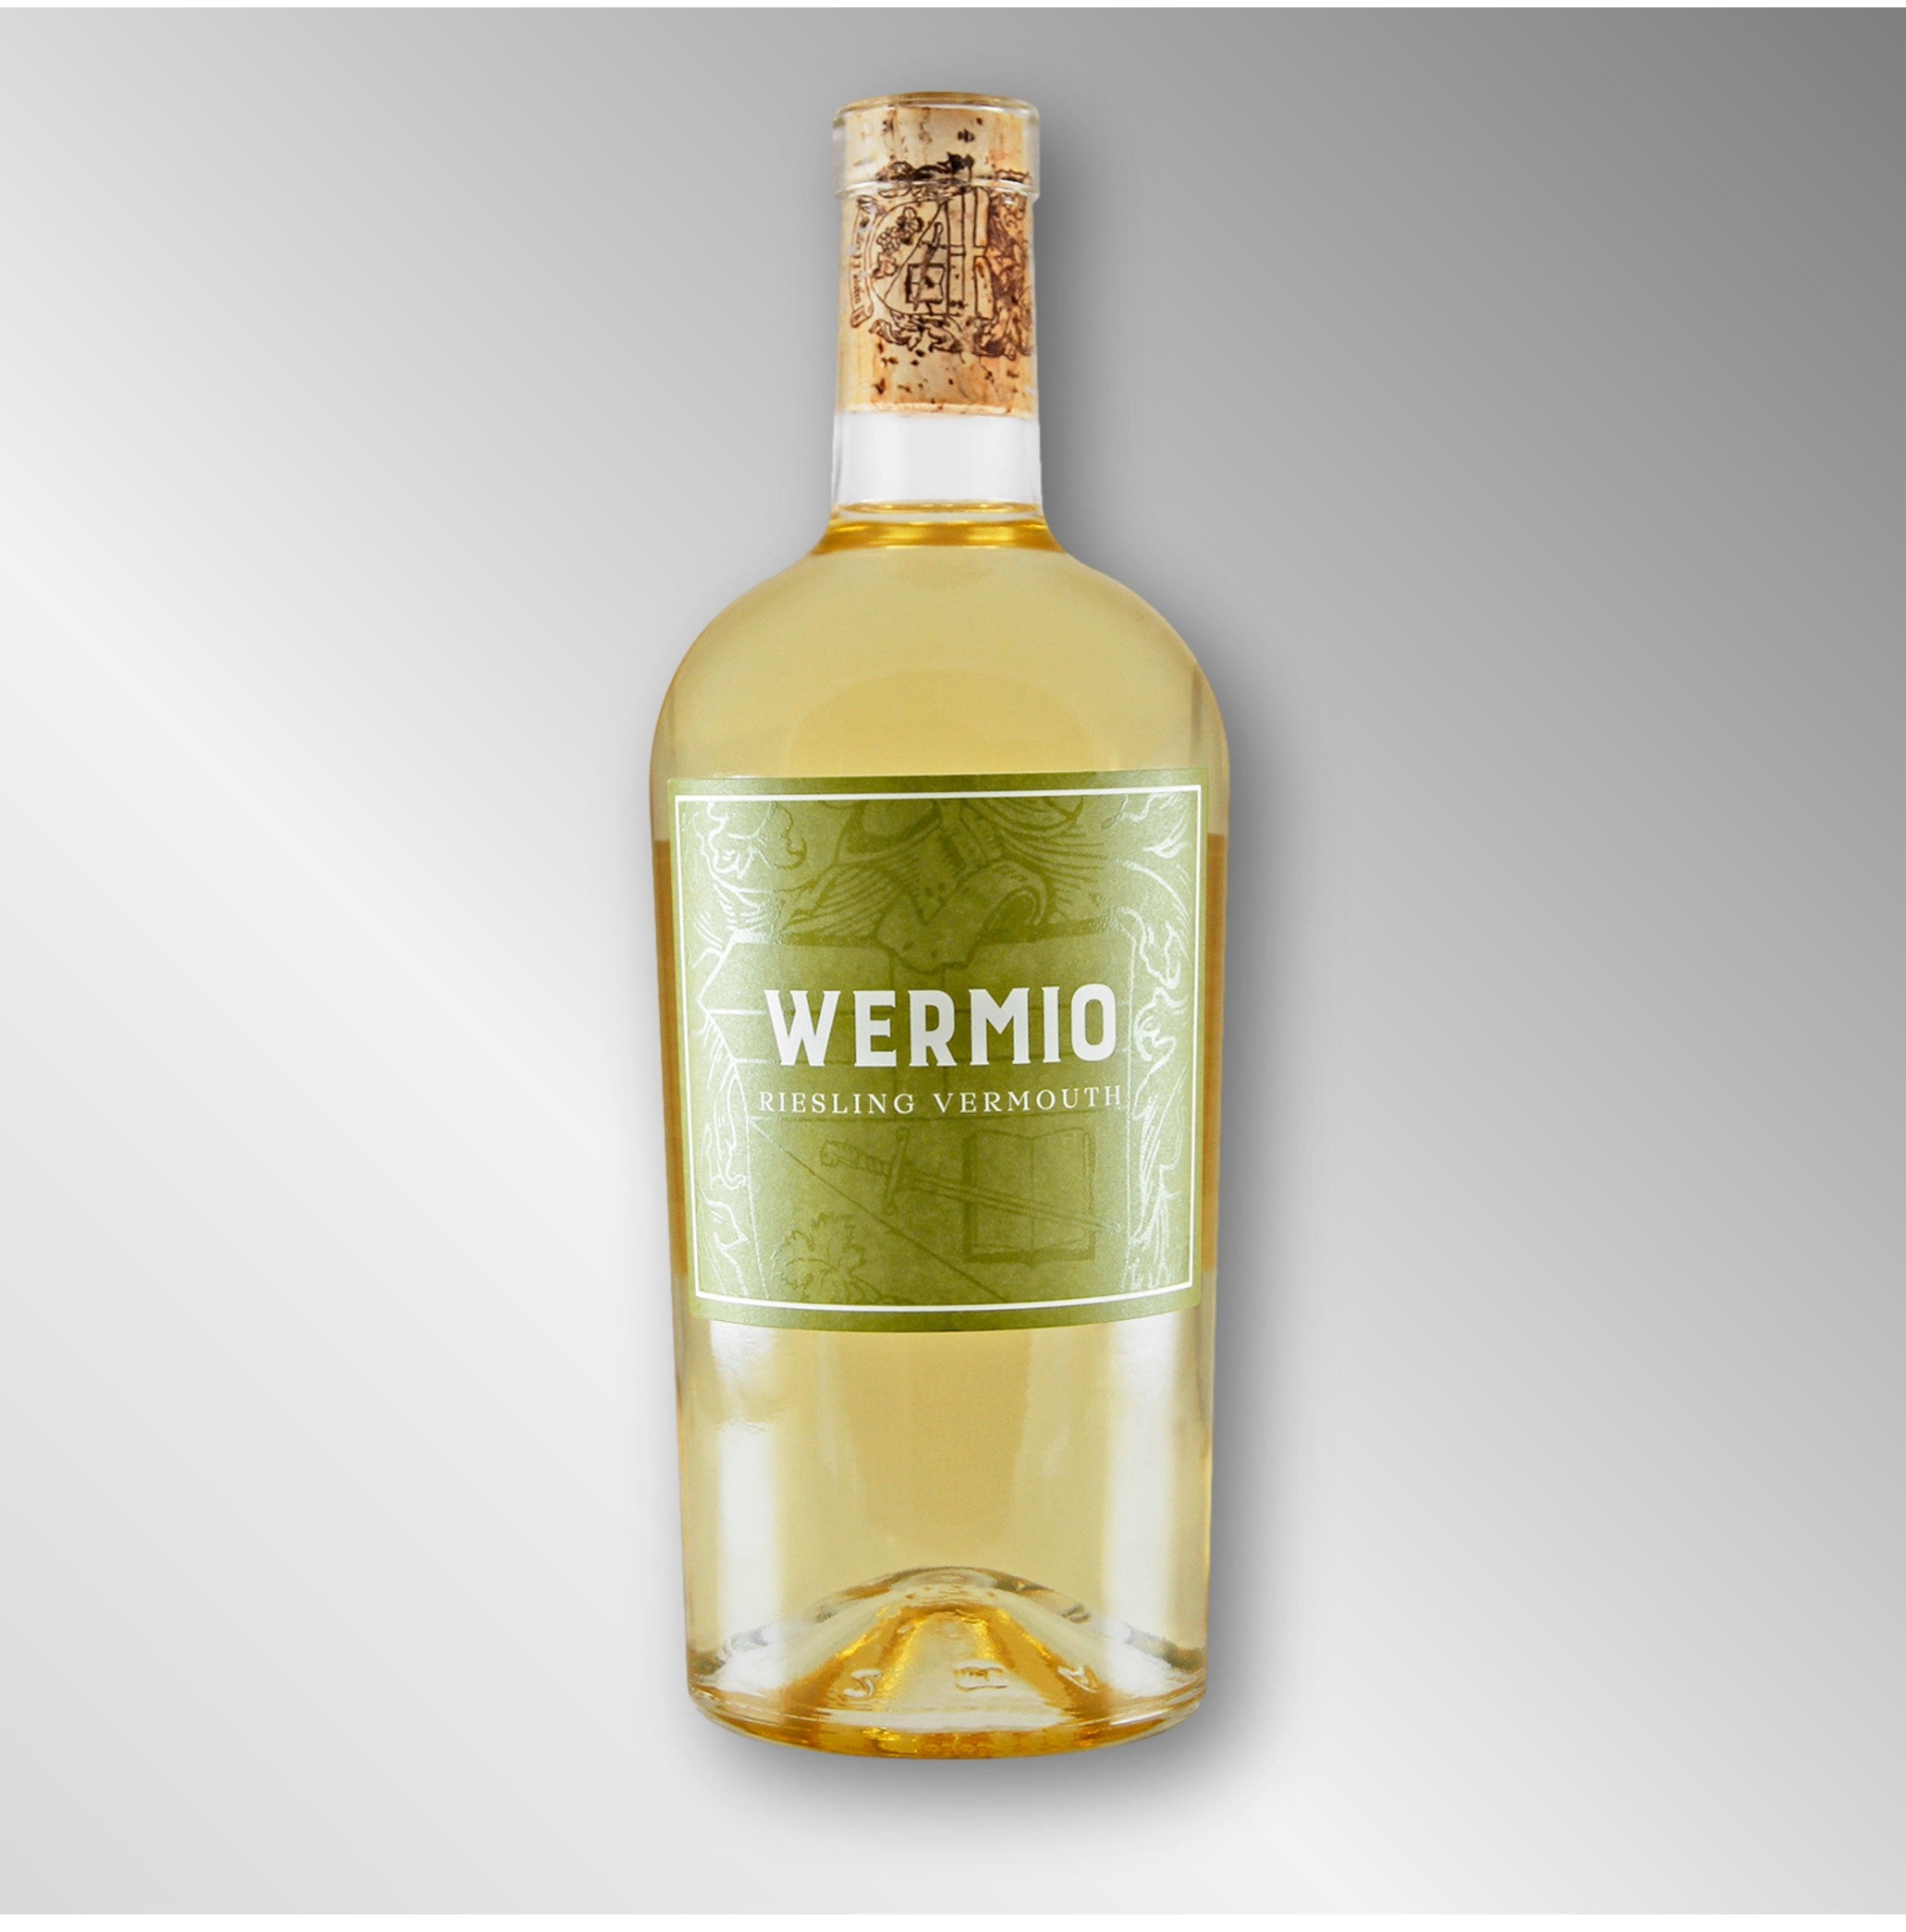 Wermio Riesling Vermouth | Weinmanufaktur Walter J. Oster | 750ml - 20% vol